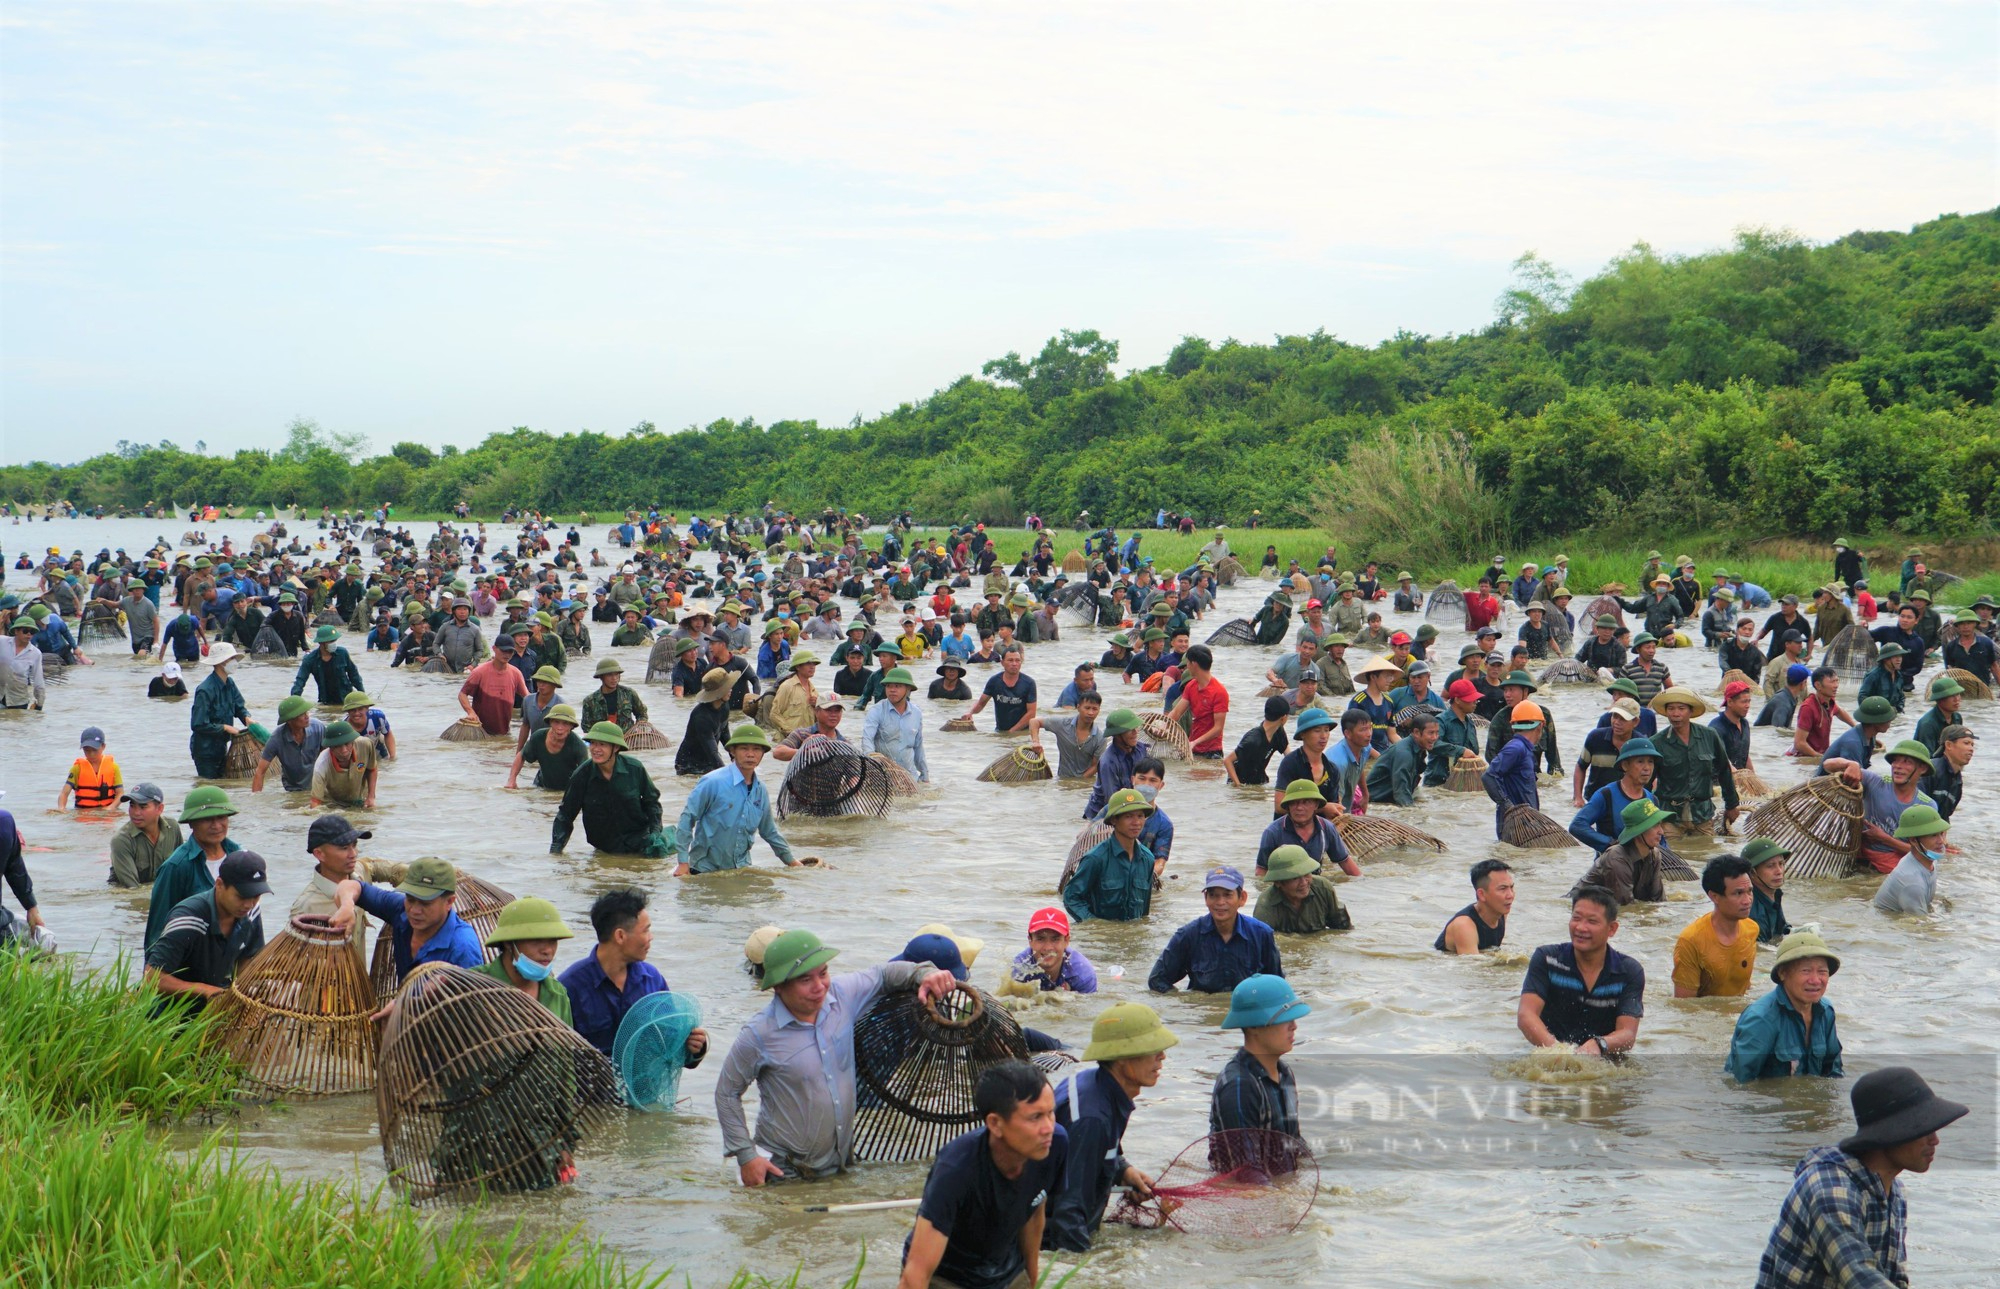 Lễ hội bắt cá Vực Rào tồn tại trên 300 năm ở Hà Tĩnh bắt nguồn từ đâu? - Ảnh 8.